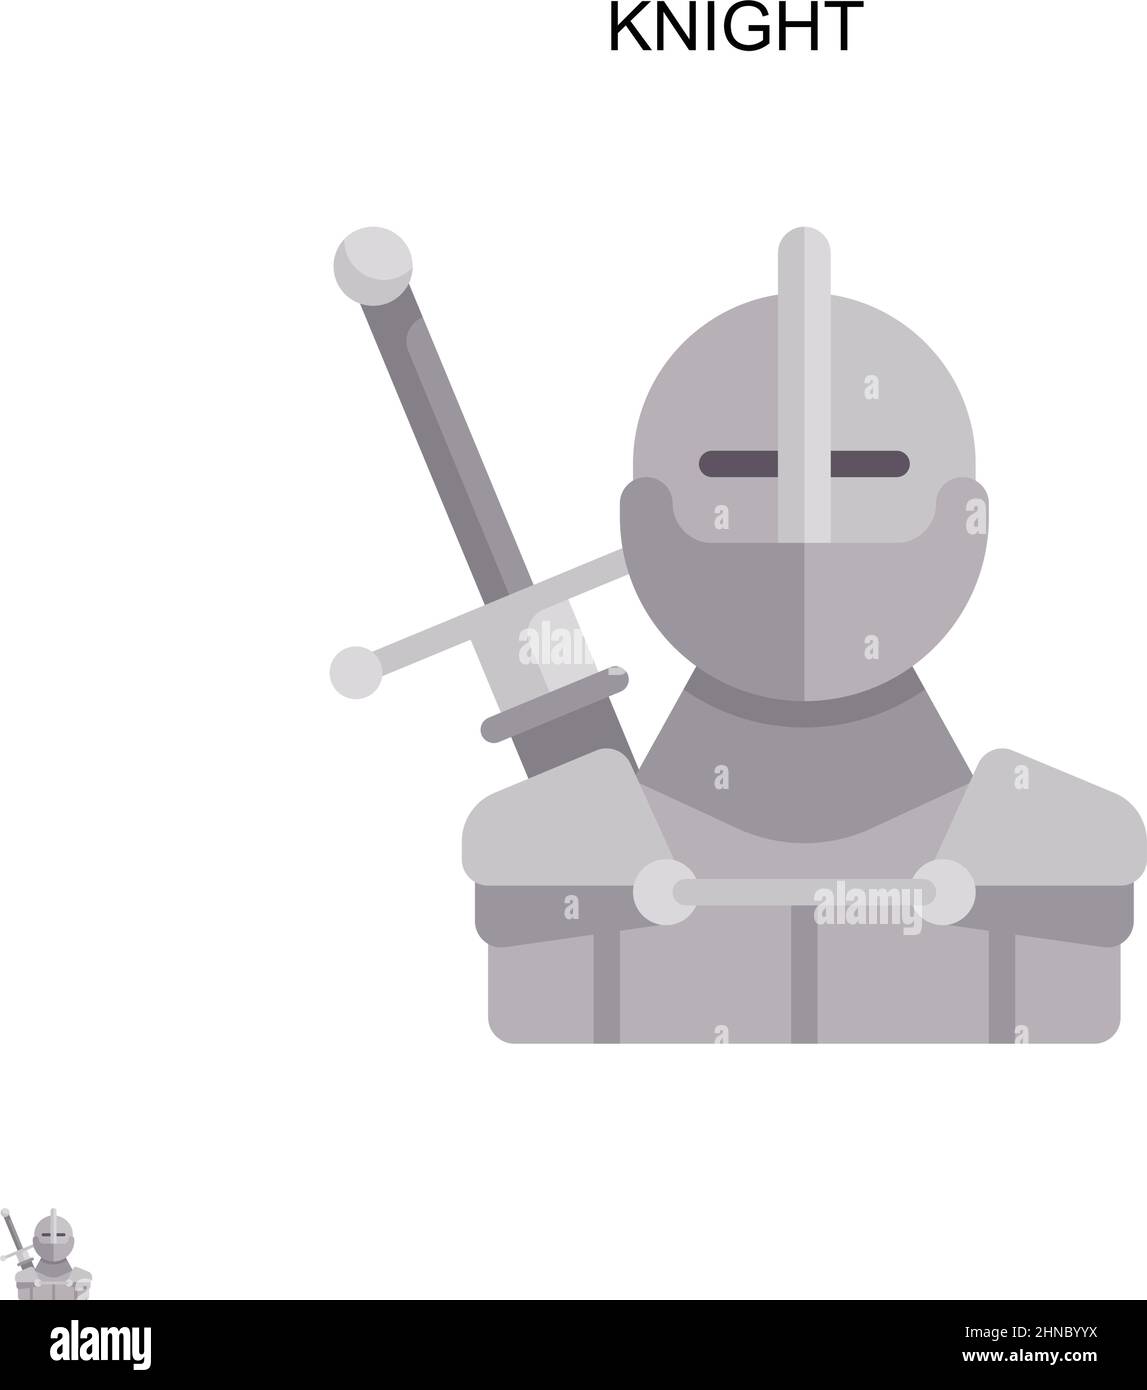 Icône de vecteur simple Knight.Modèle de conception de symbole d'illustration pour élément d'interface utilisateur Web mobile. Illustration de Vecteur